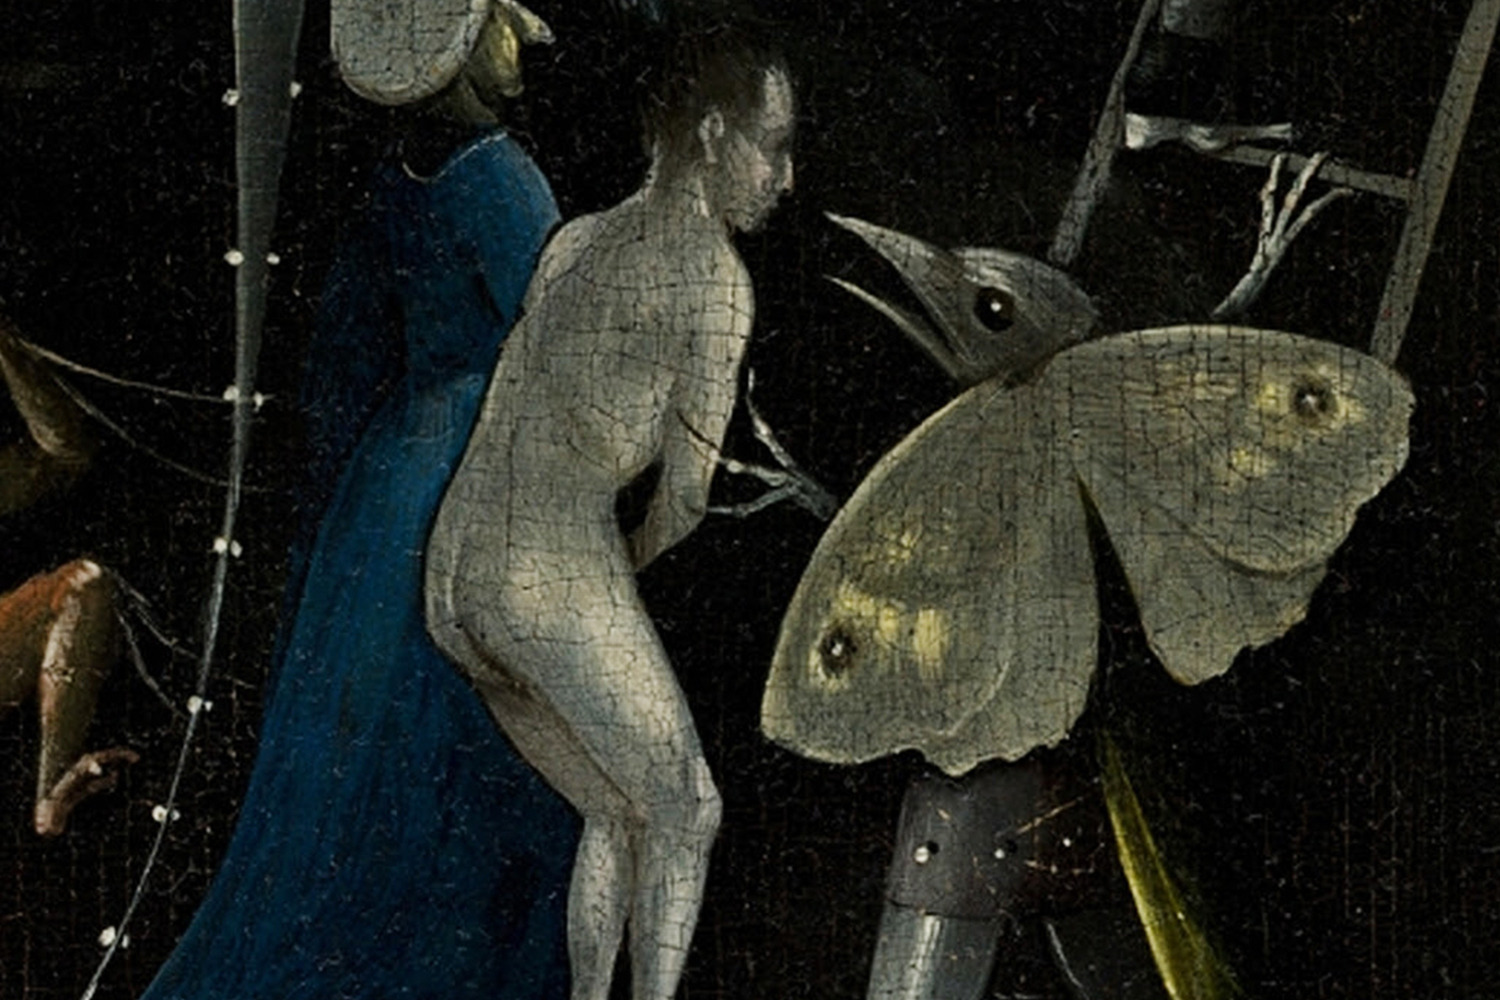  Dettaglio della farfalla-mostro nel dipinto “The Garden of Earthly Delights”,&nbsp;Hieronymus Bosch, ca. 1500   